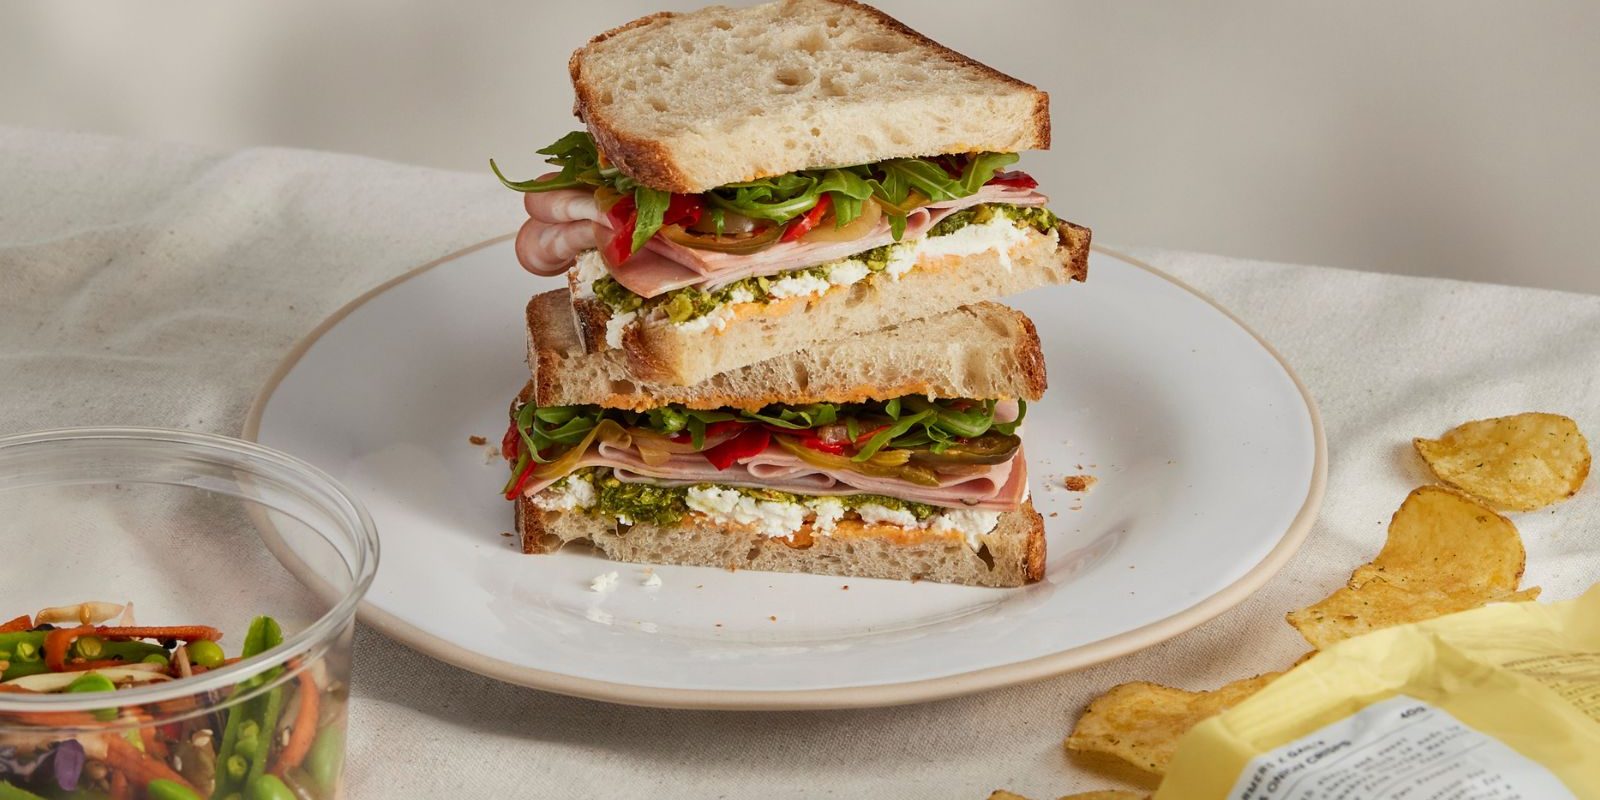 GAIL's sandwich food pairing